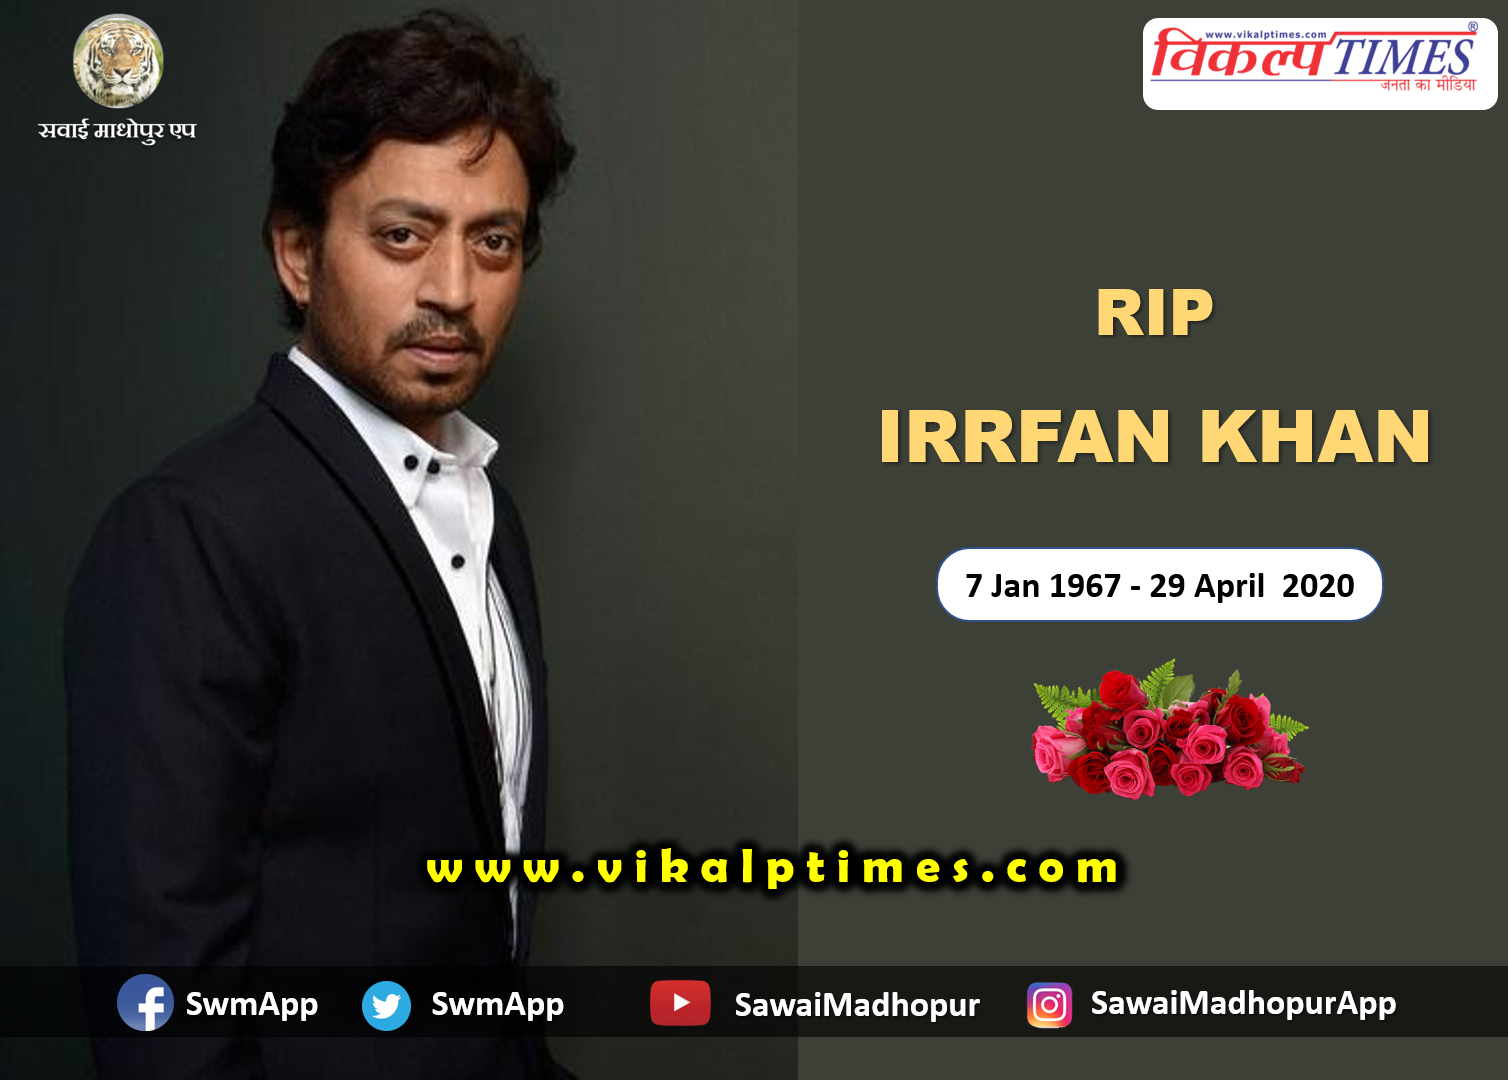 Bollywood actor Irrfan Khan passes away at 54